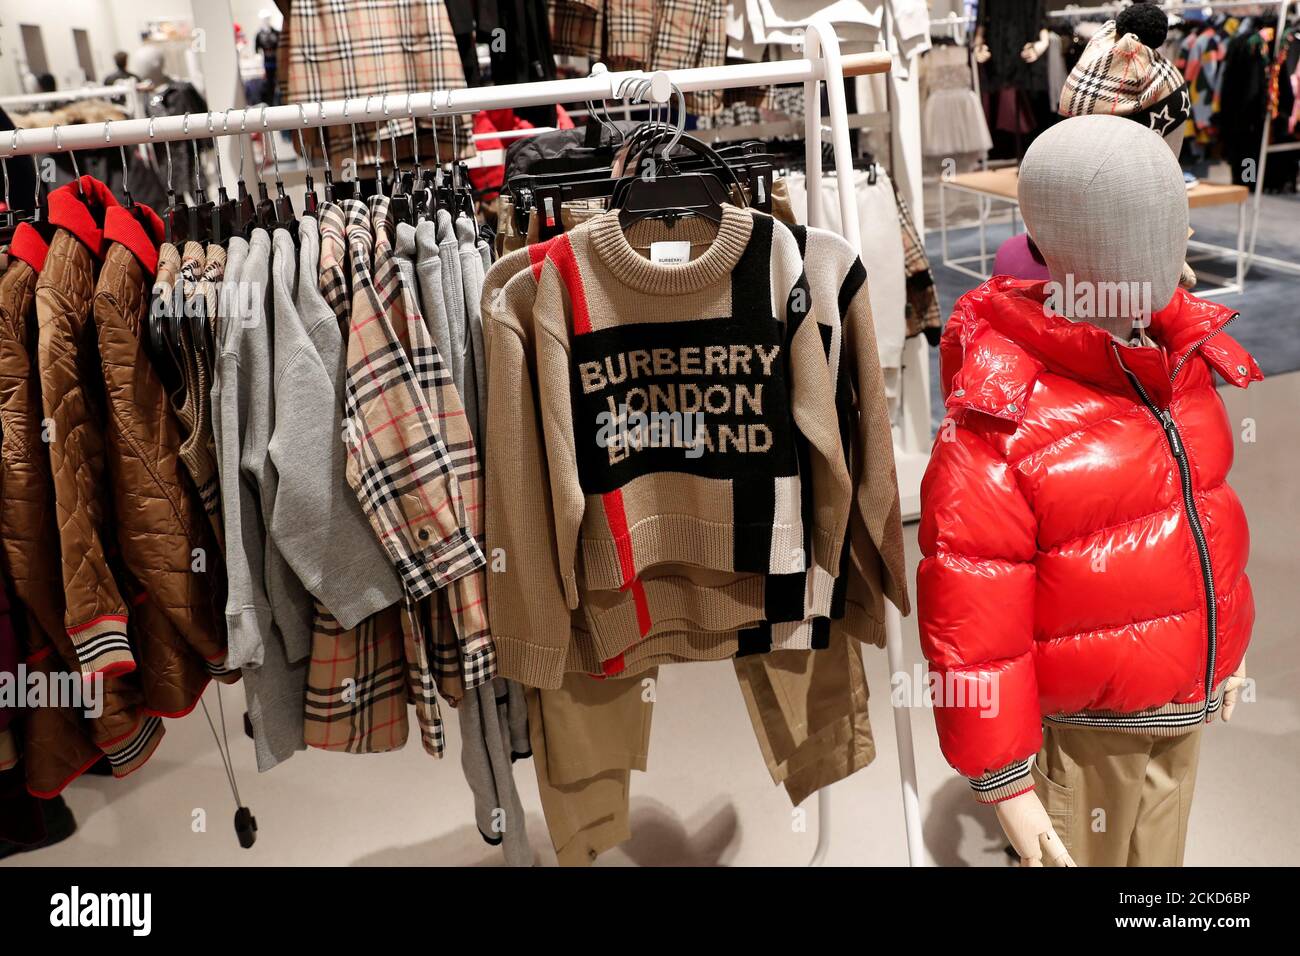 La ropa de Burberry para niños se ve en exhibición en la tienda insignia  Nordstrom durante un avance de los medios en Nueva York, EE.UU., 21 de  octubre de 2019. REUTERS/Shannon Stapleton